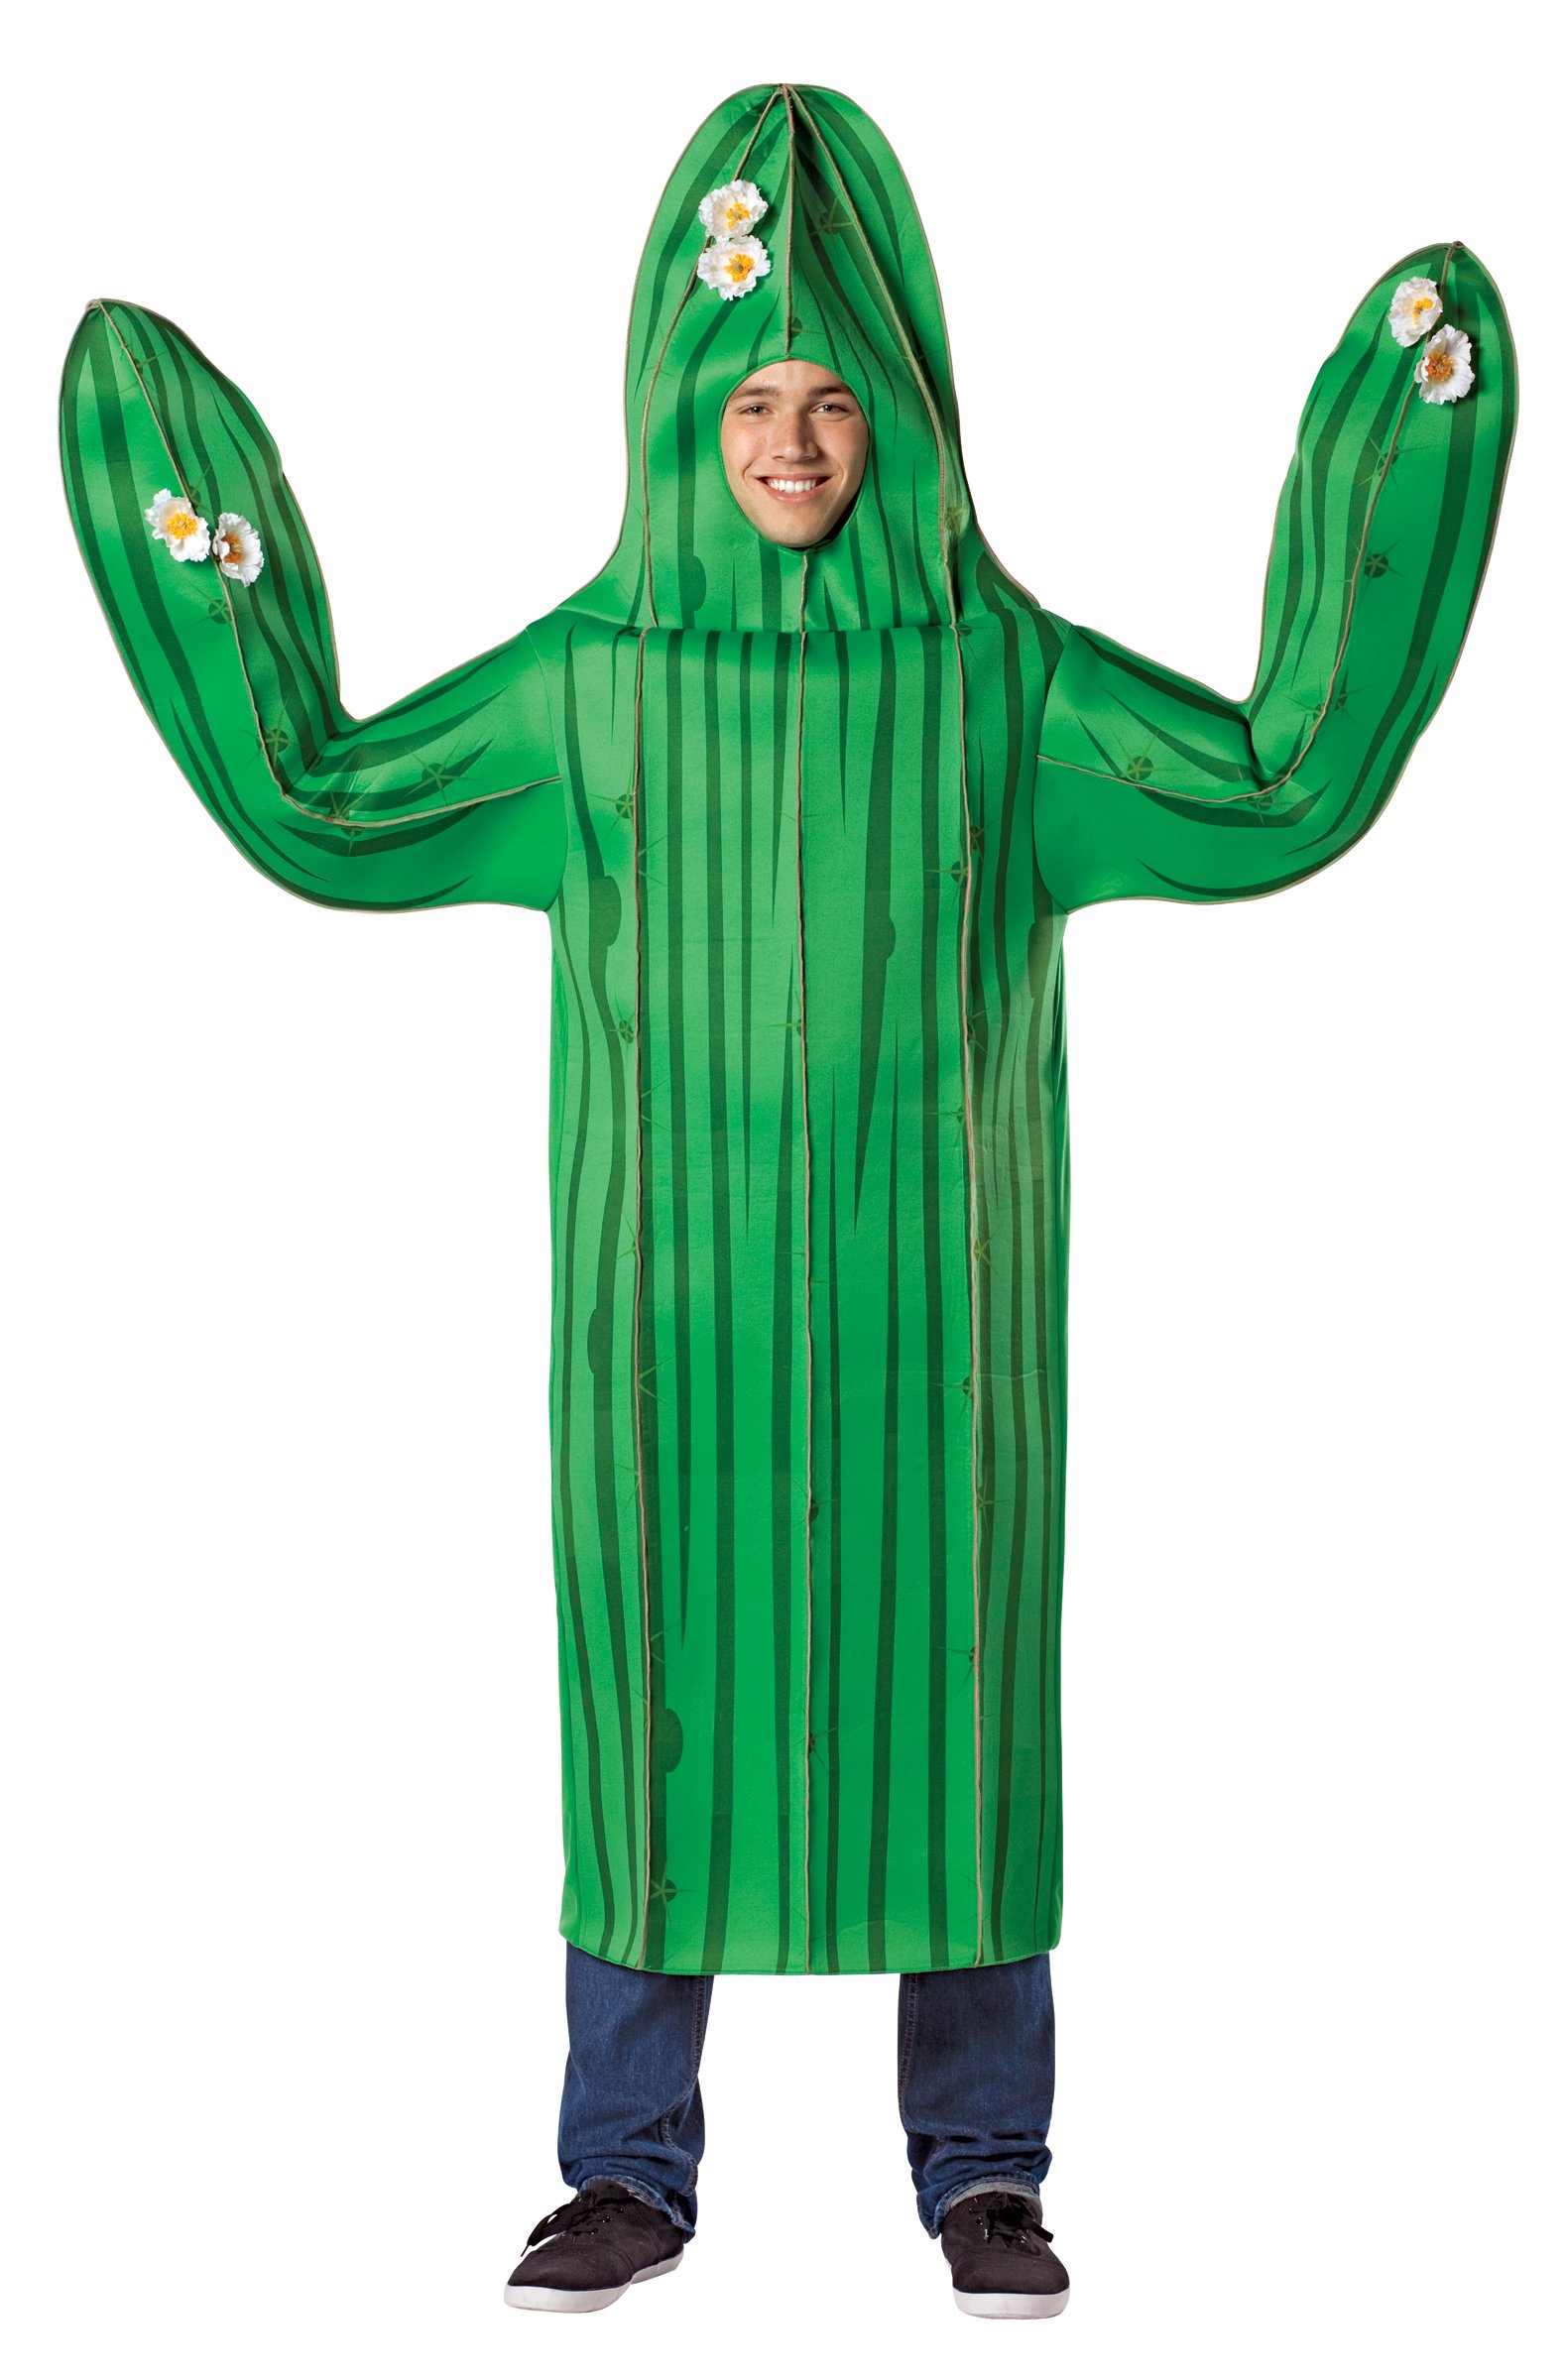 Cactus Adult Costume